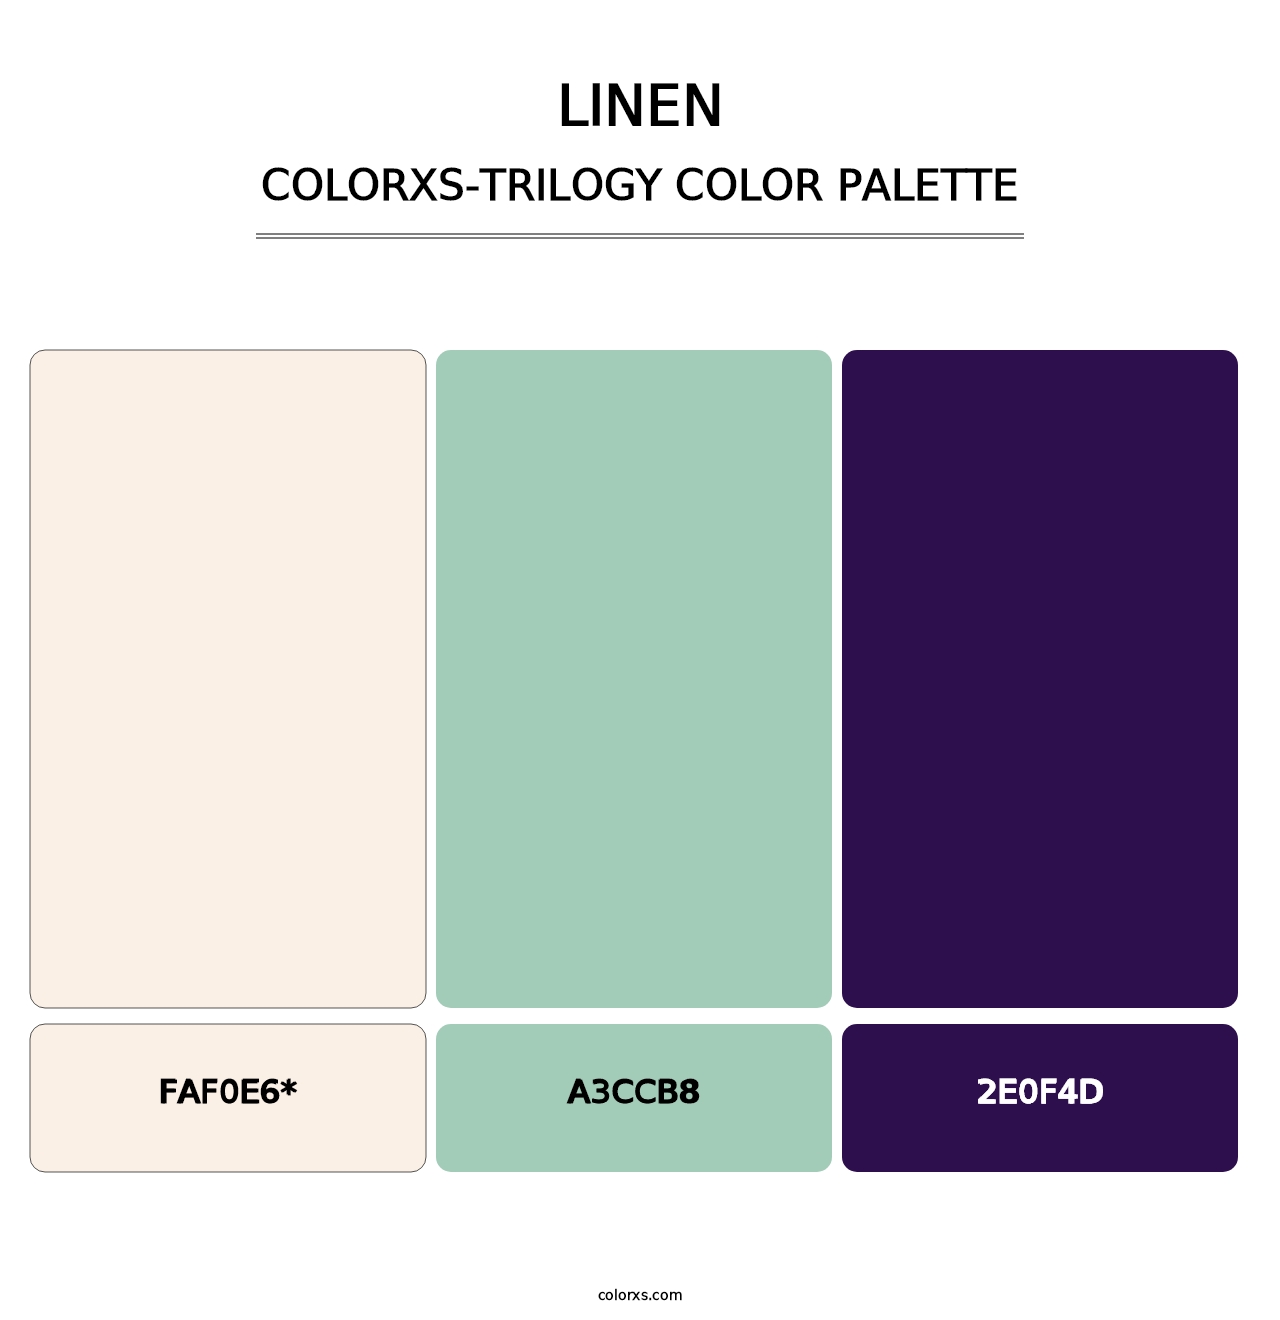 Linen - Colorxs Trilogy Palette